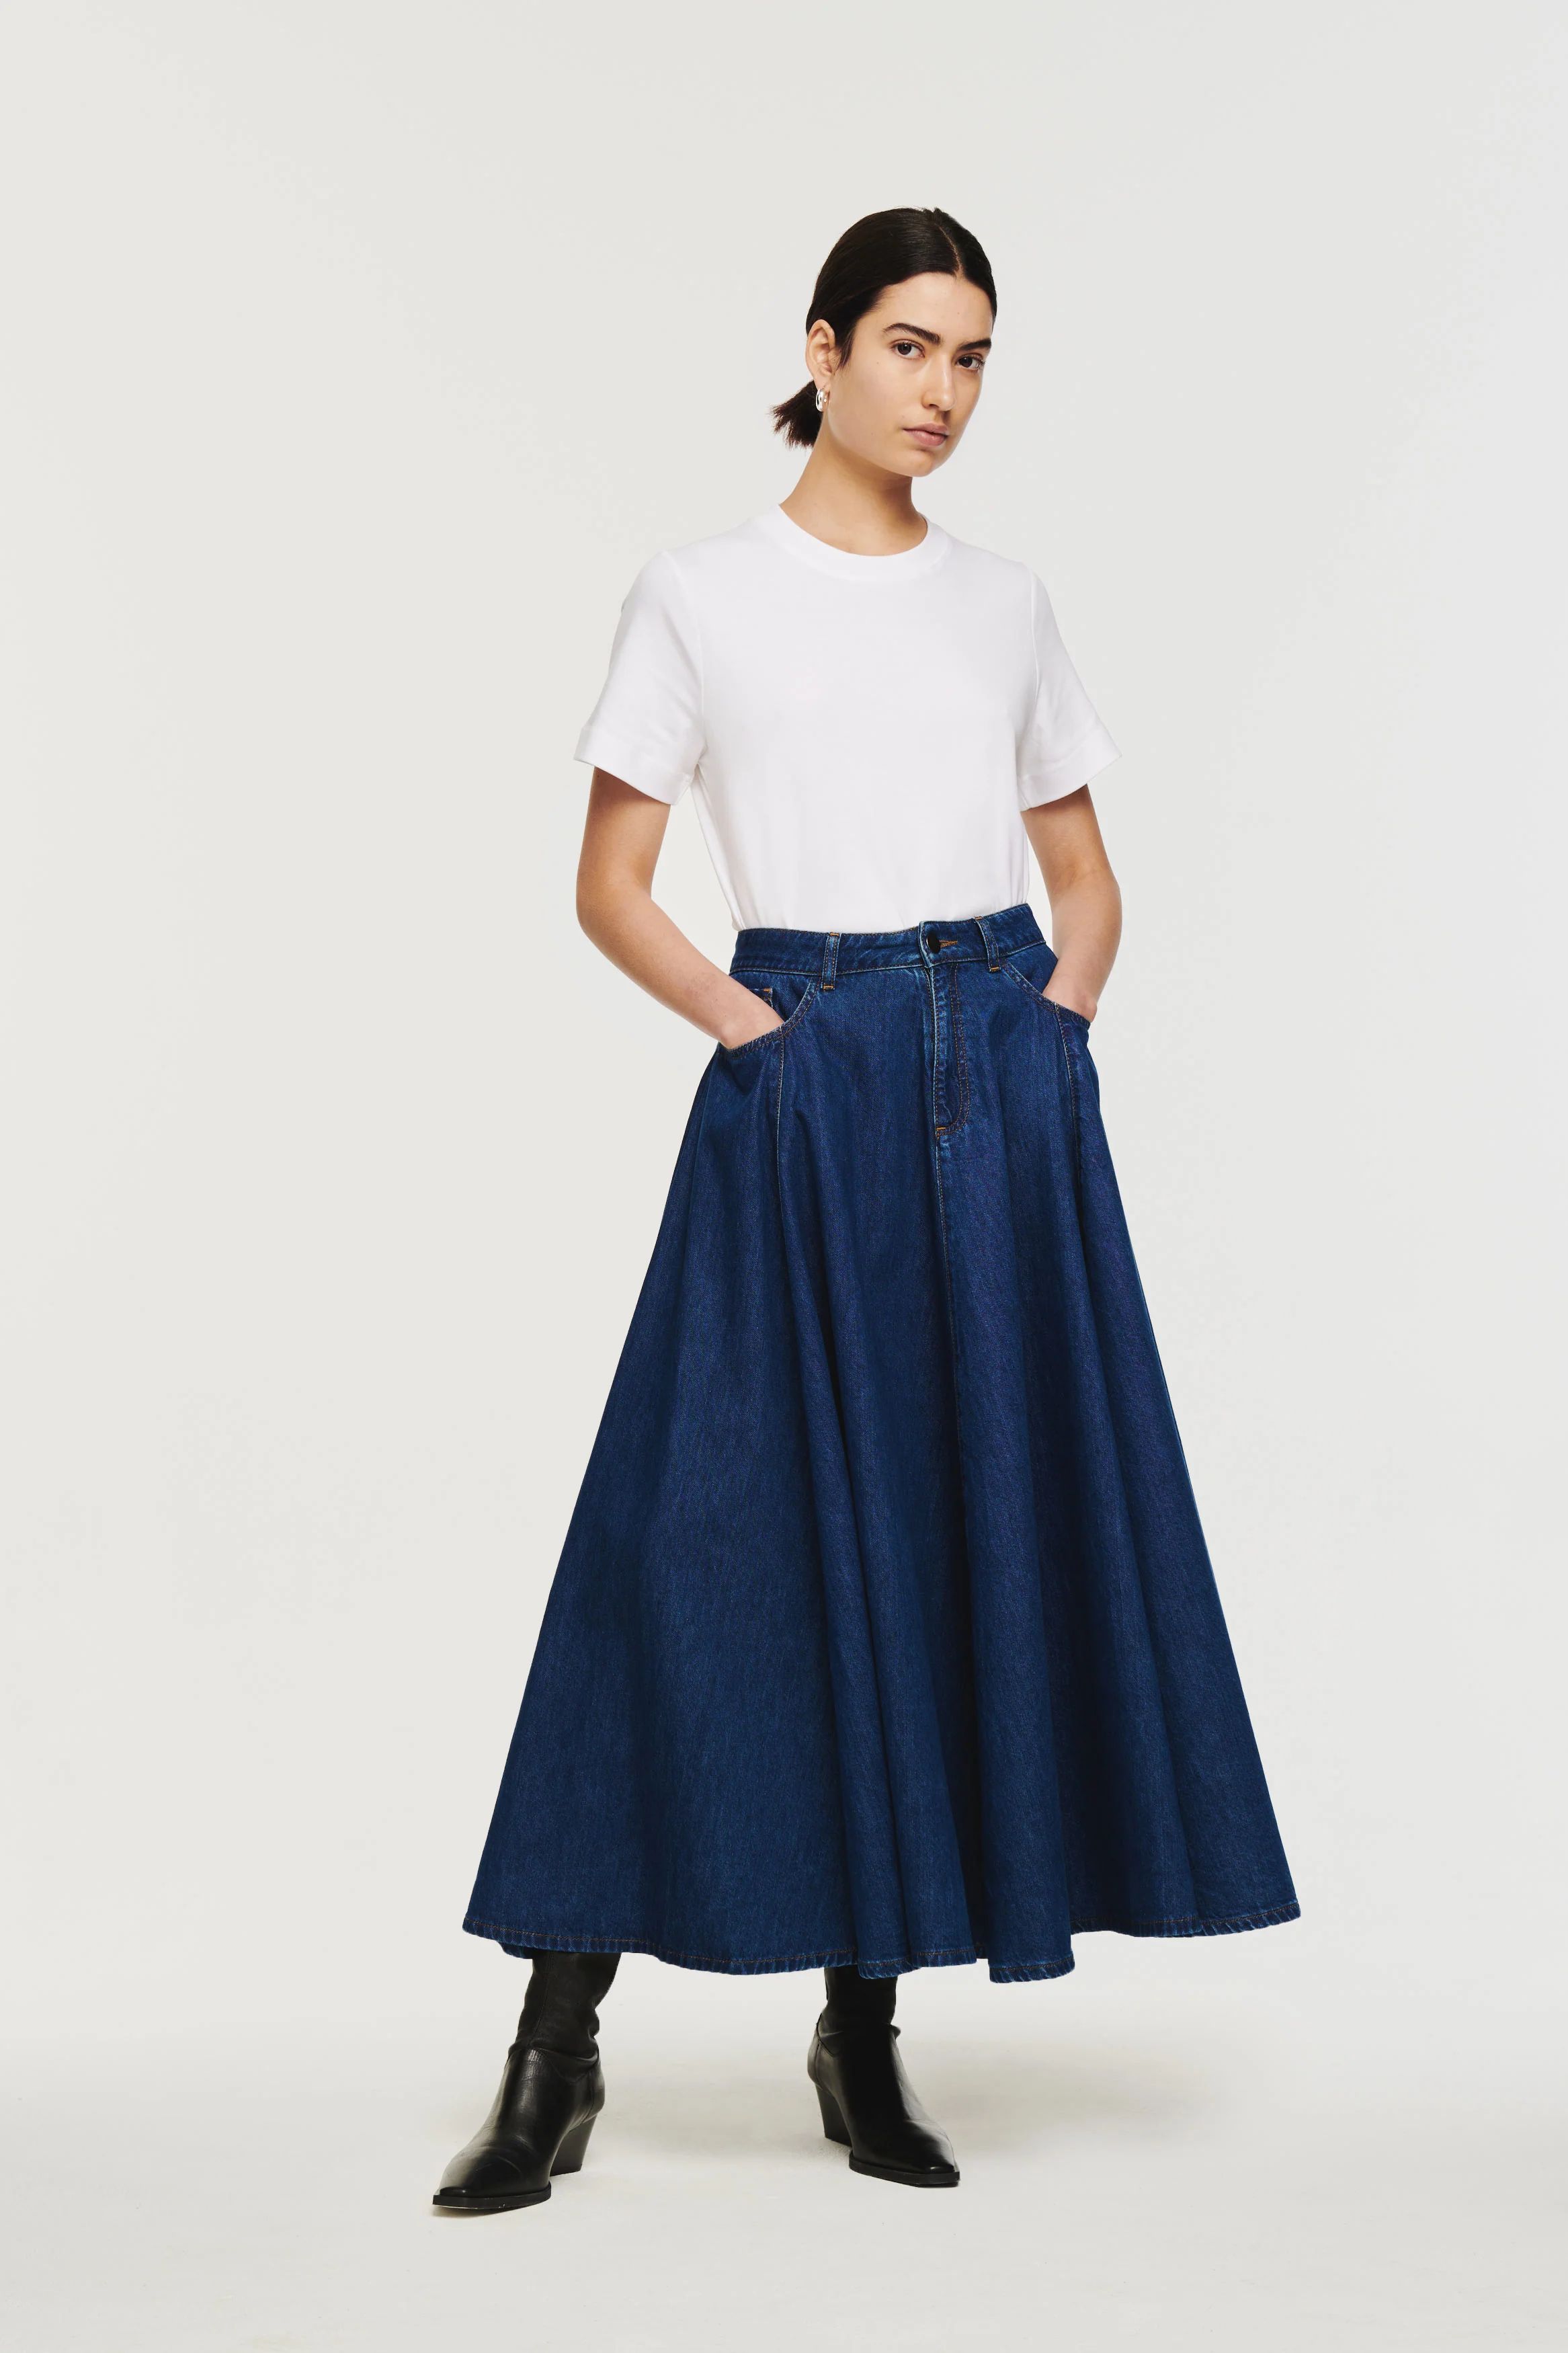 Luna | Volume Ankle Length Skirt in Mid Blue | ALIGNE | Aligne UK